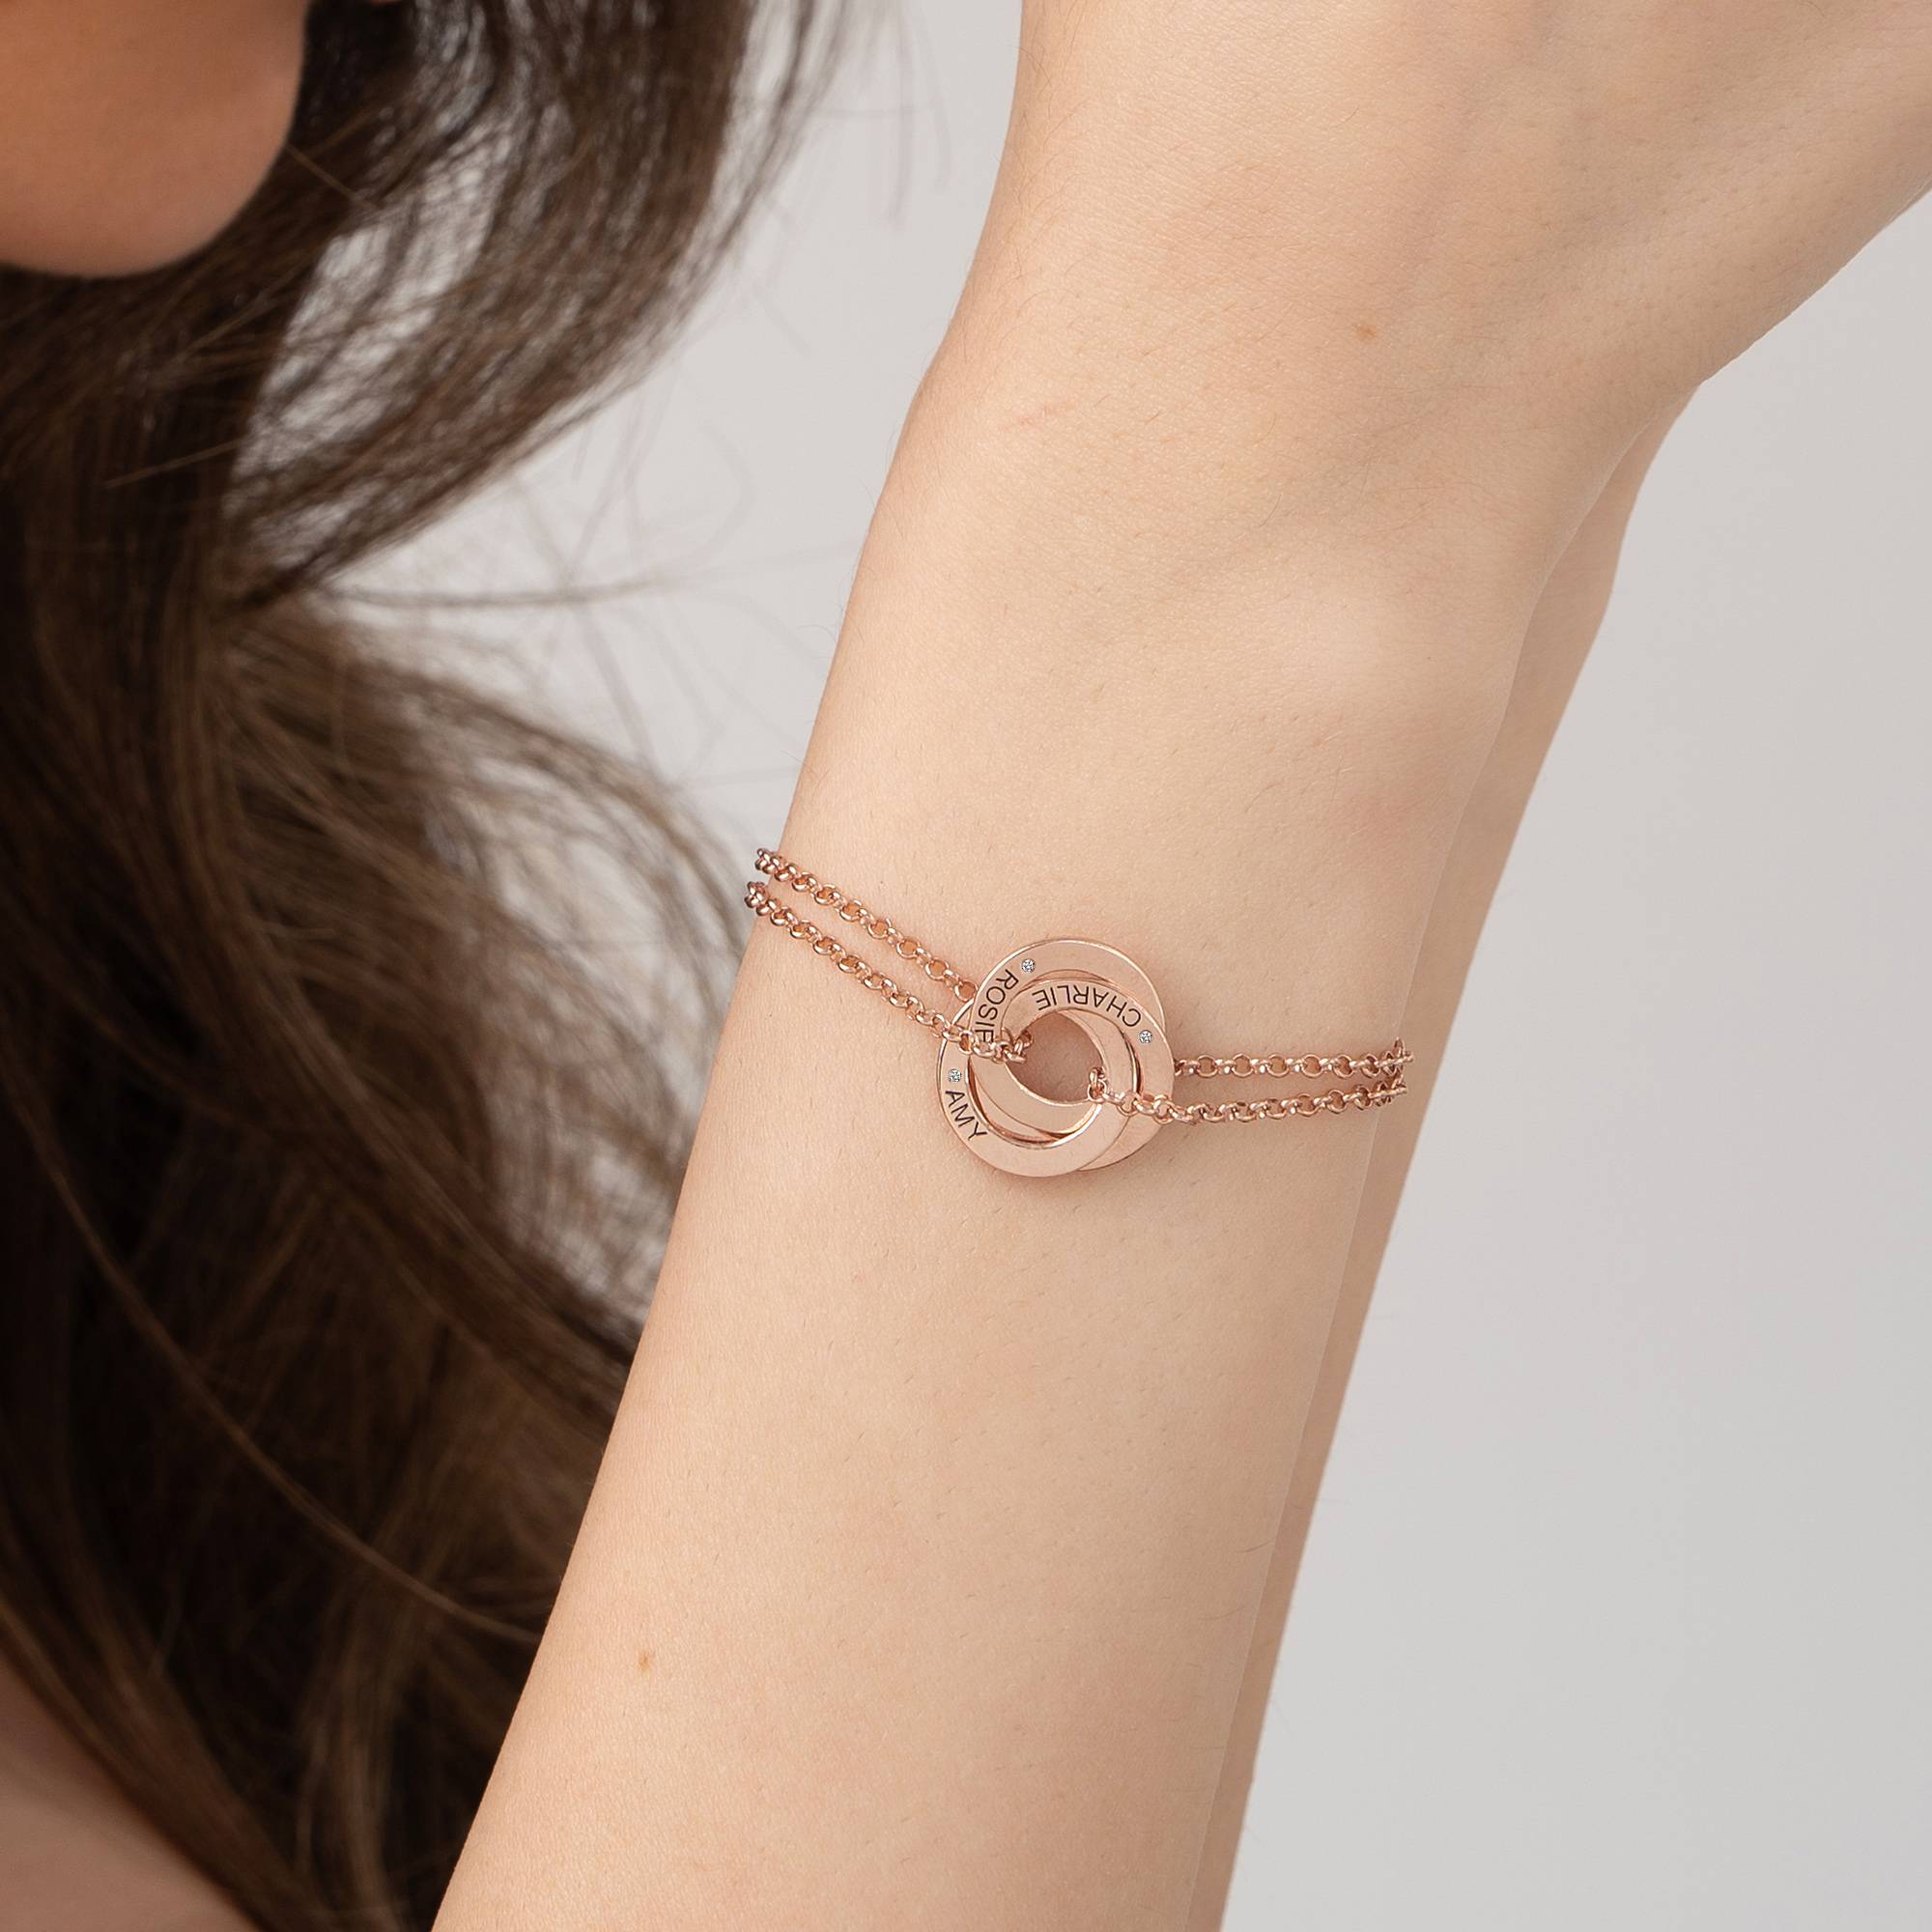 Lucy Russische Ring-Armband mit Diamant - 750er rosé vergoldetes Silber-6 Produktfoto